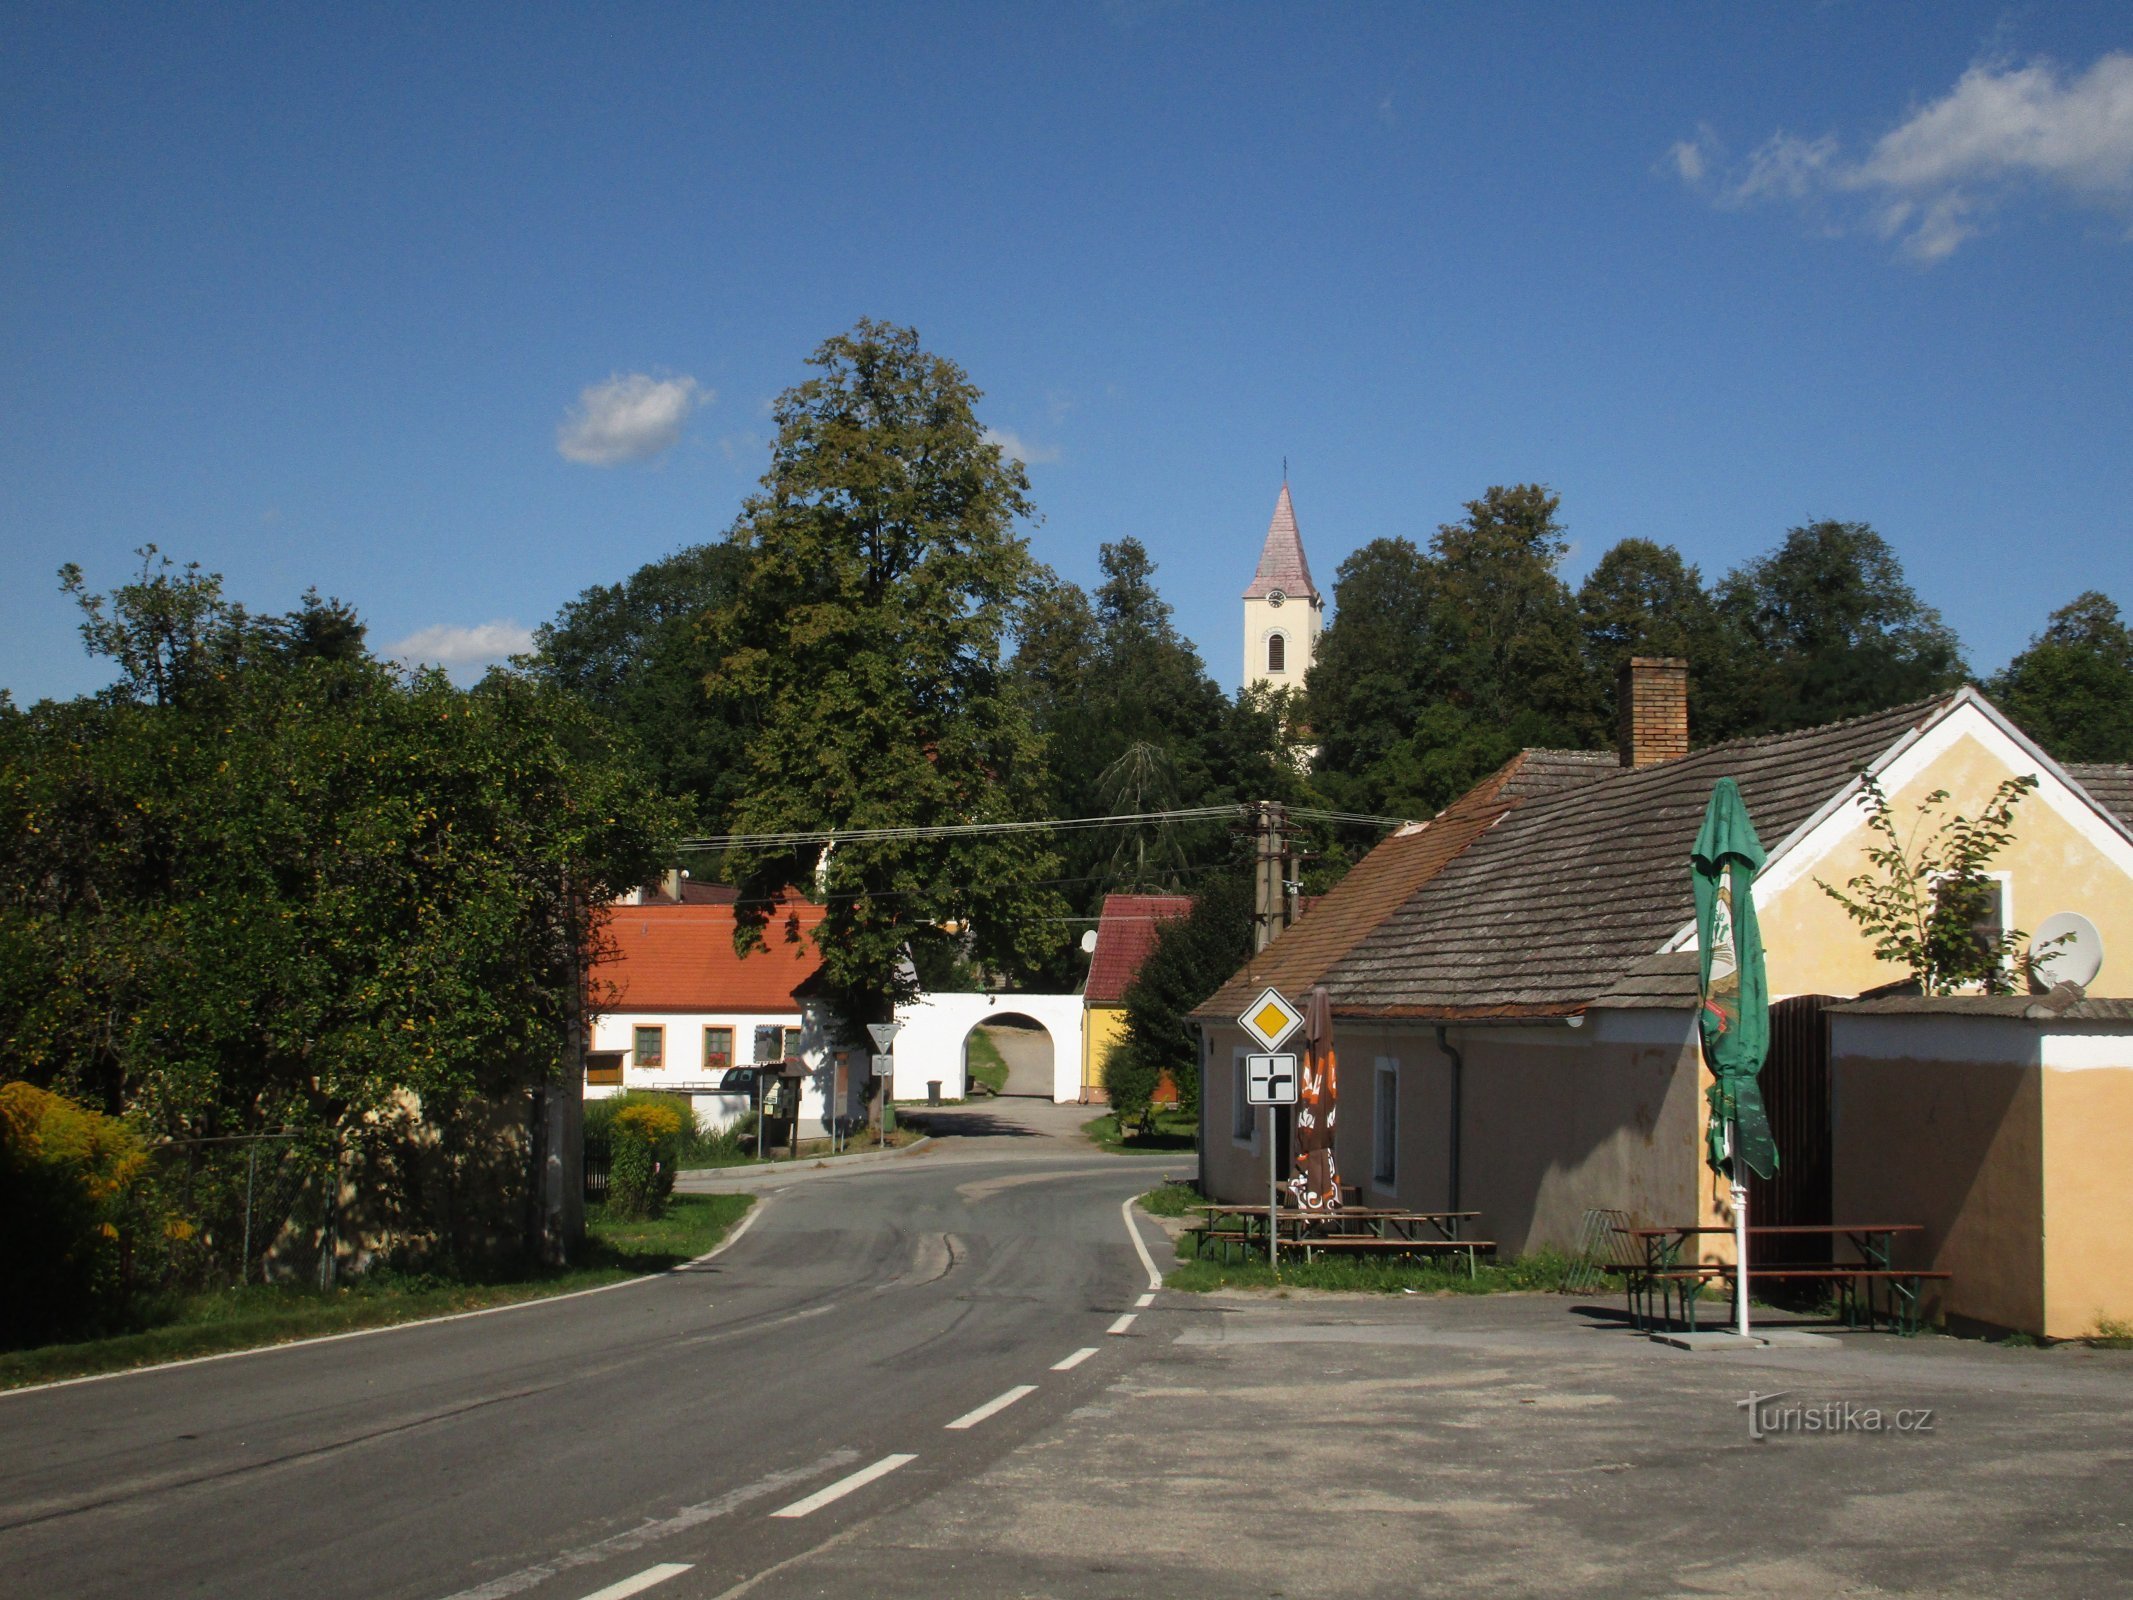 uitzicht op het dorp vanaf weg 153 vanuit Chlum u Třeboň